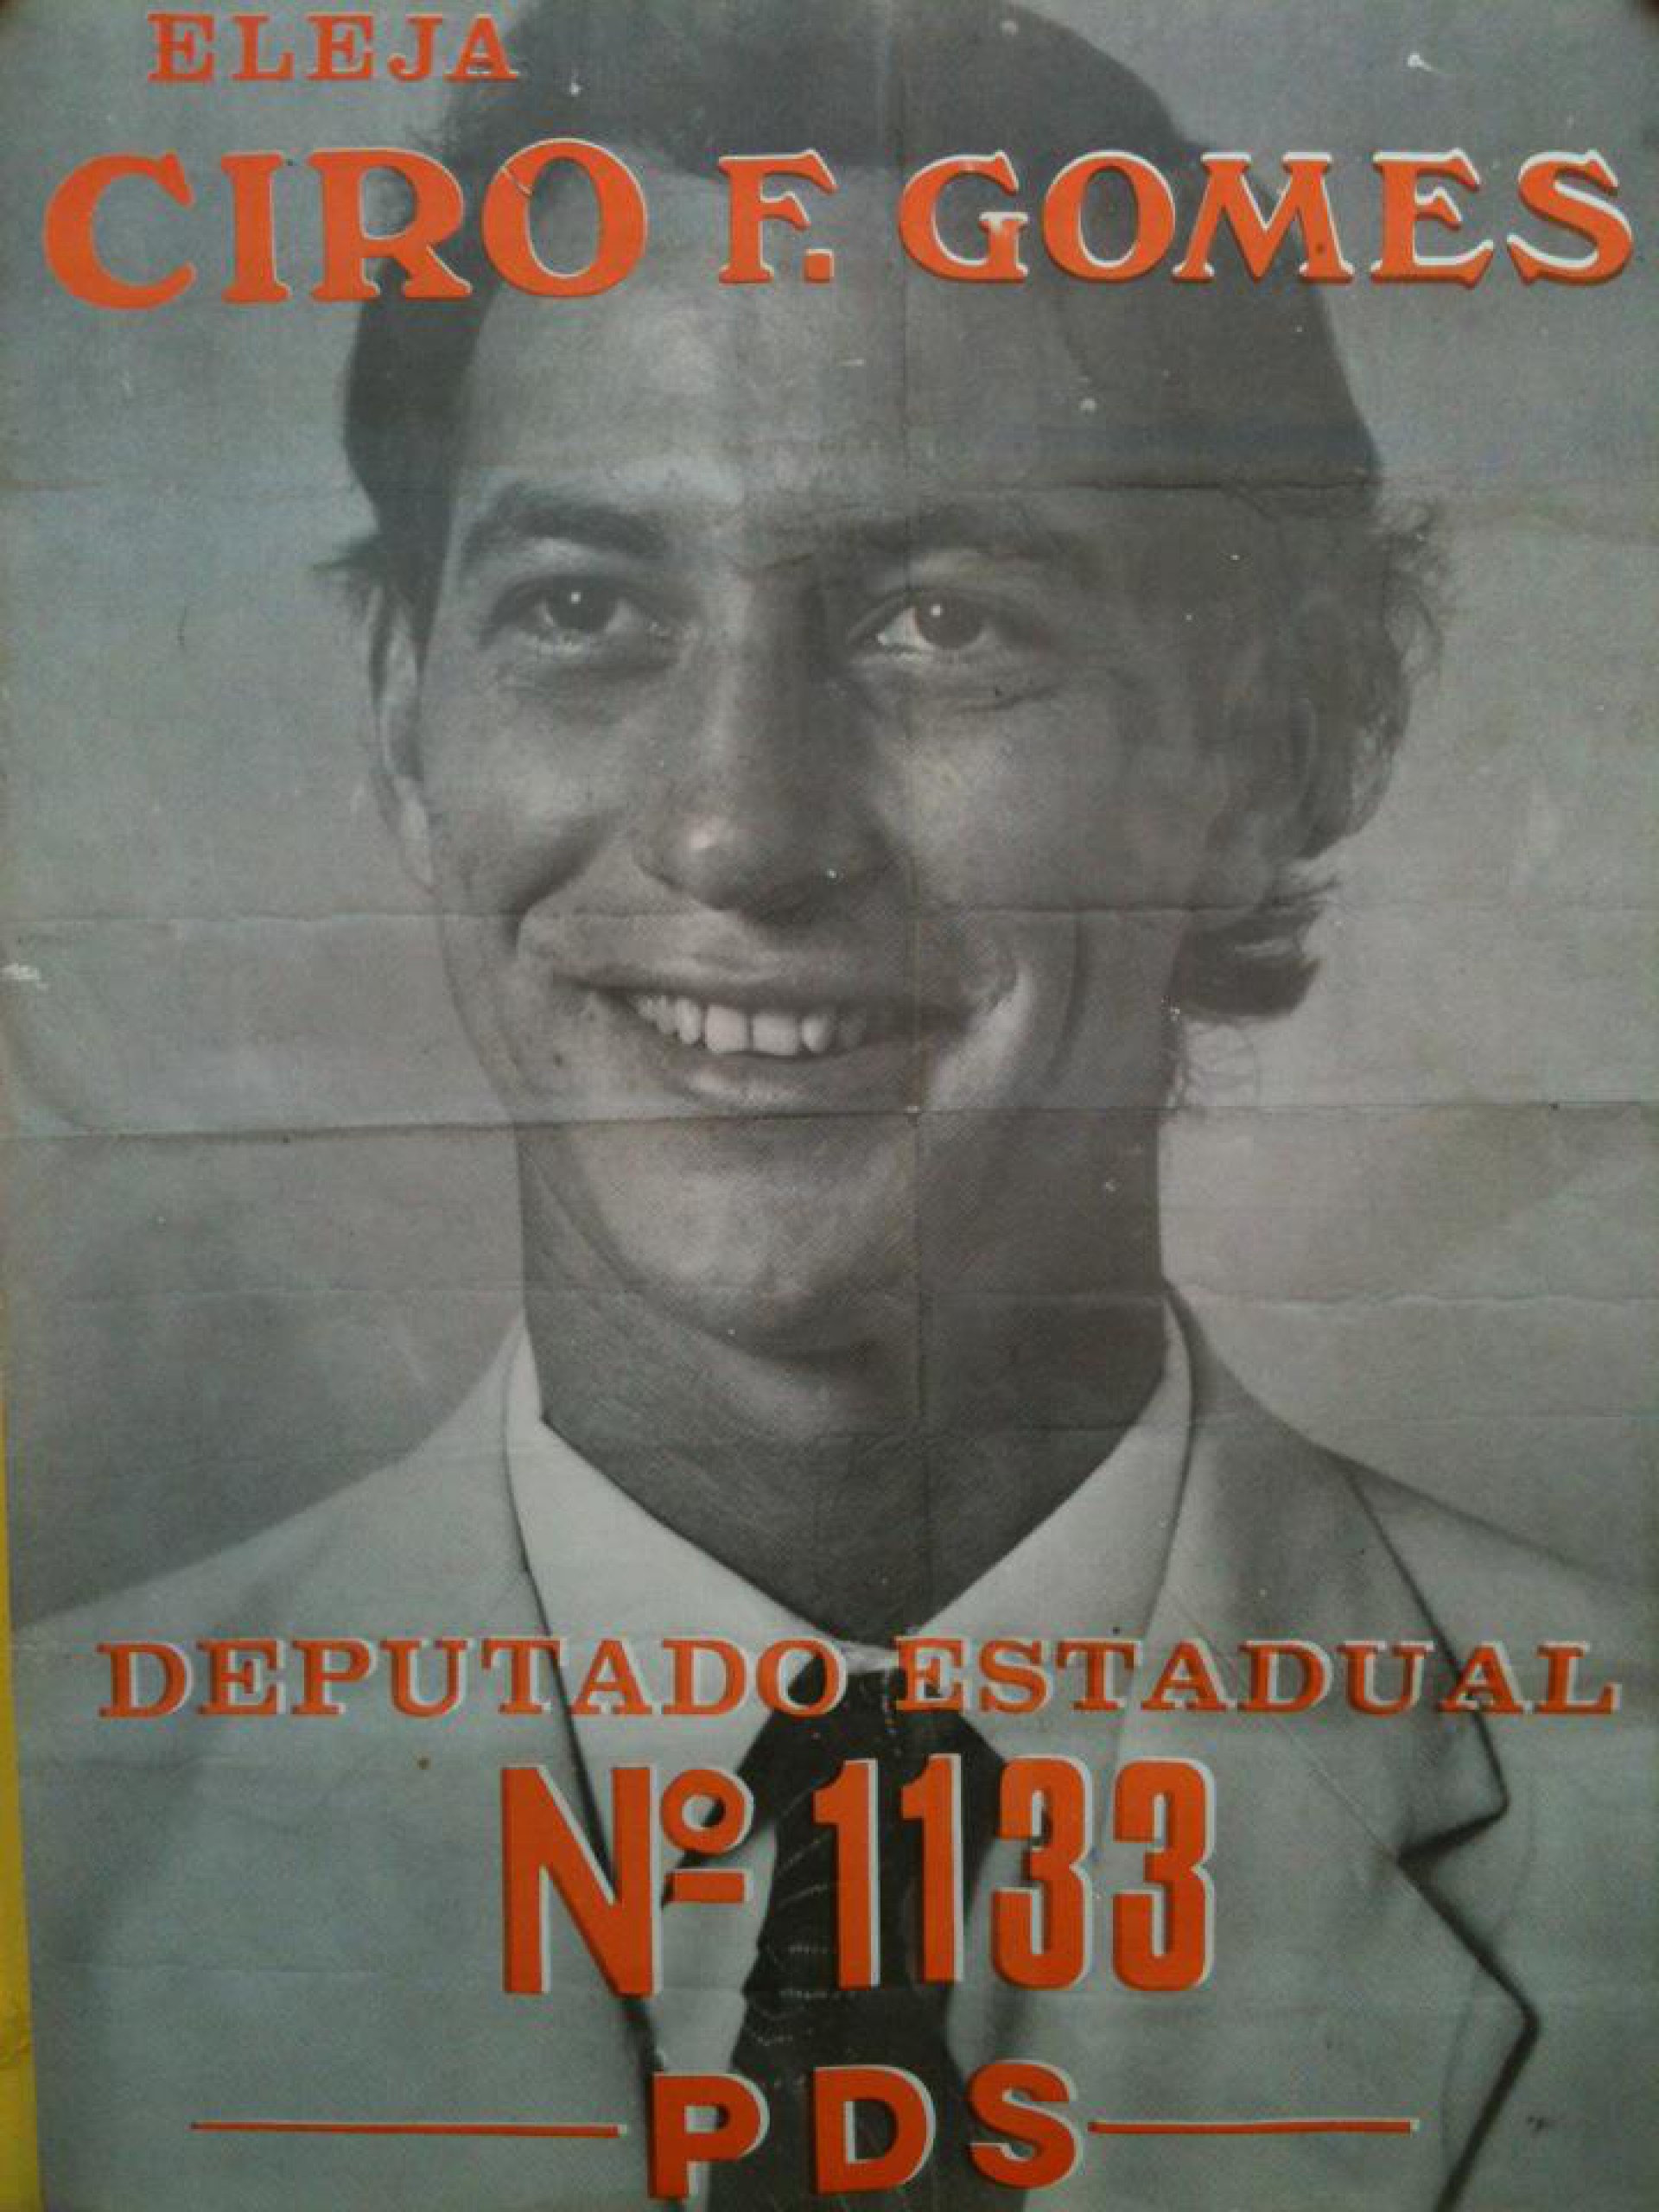 Santinho da campanha de Ciro Gomes a deputado estadual pelo PDS, em 1982(Foto: Reprodução)